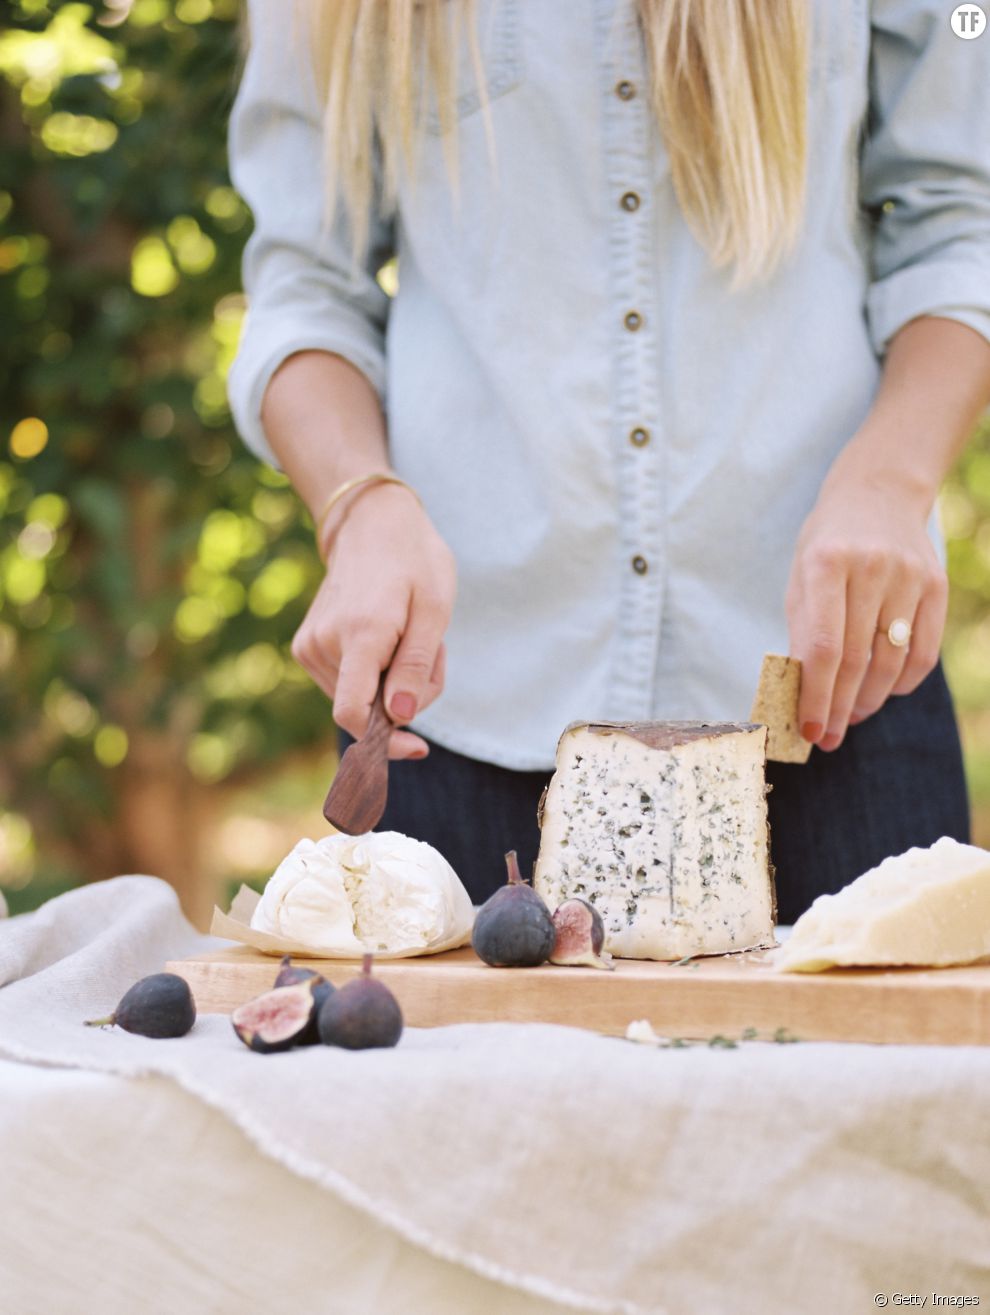 Manger du fromage serait bon pour la santé